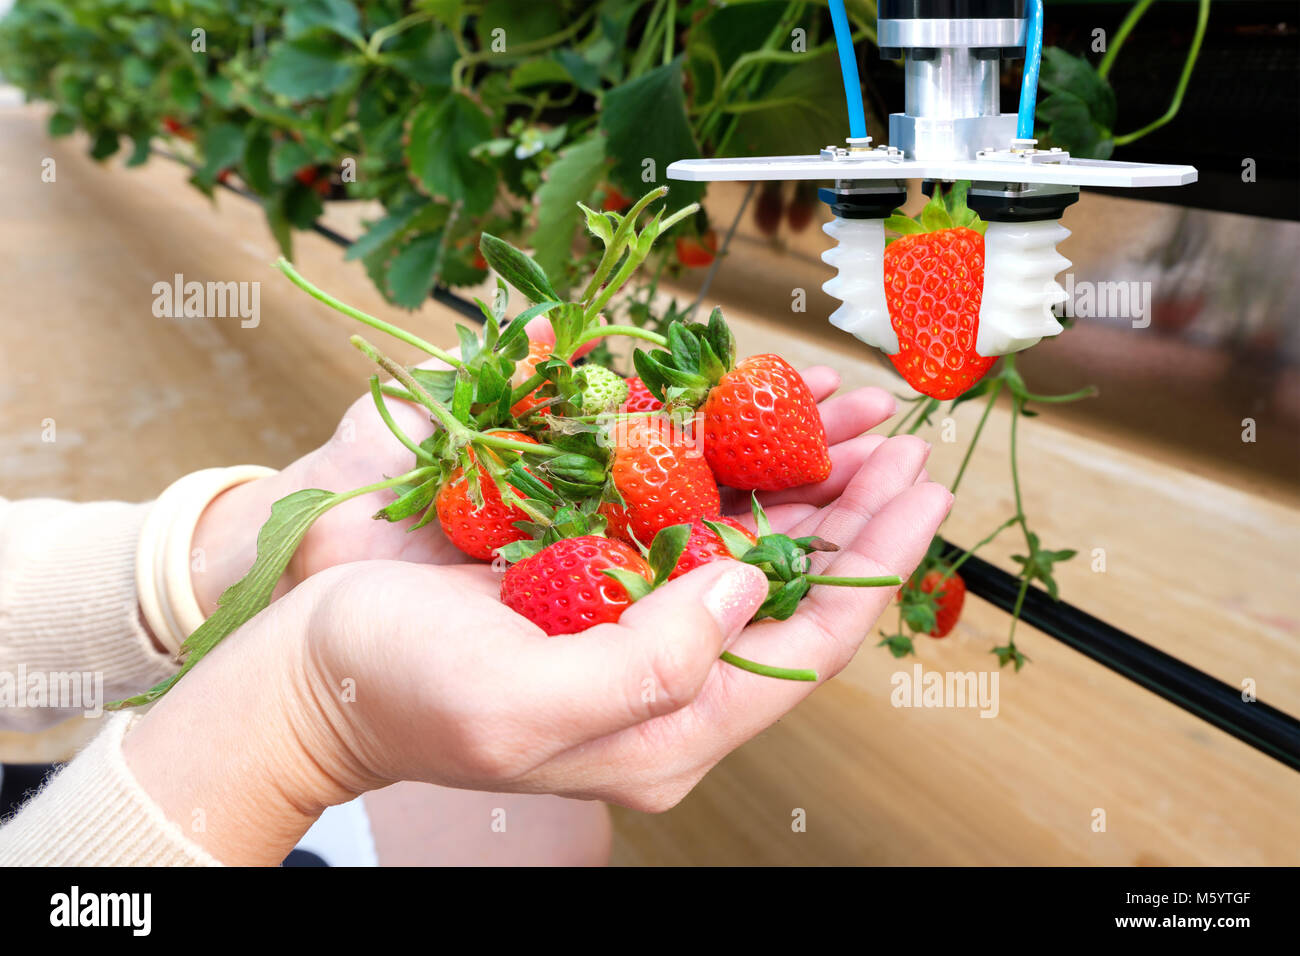 Landwirtschaft Technik, künstliche Intelligenz, Konzepte, Landwirt verwenden Sie smart farm Automatisierung Robot Arm assistant Bildverarbeitung für die Ernte strawberr Stockfoto